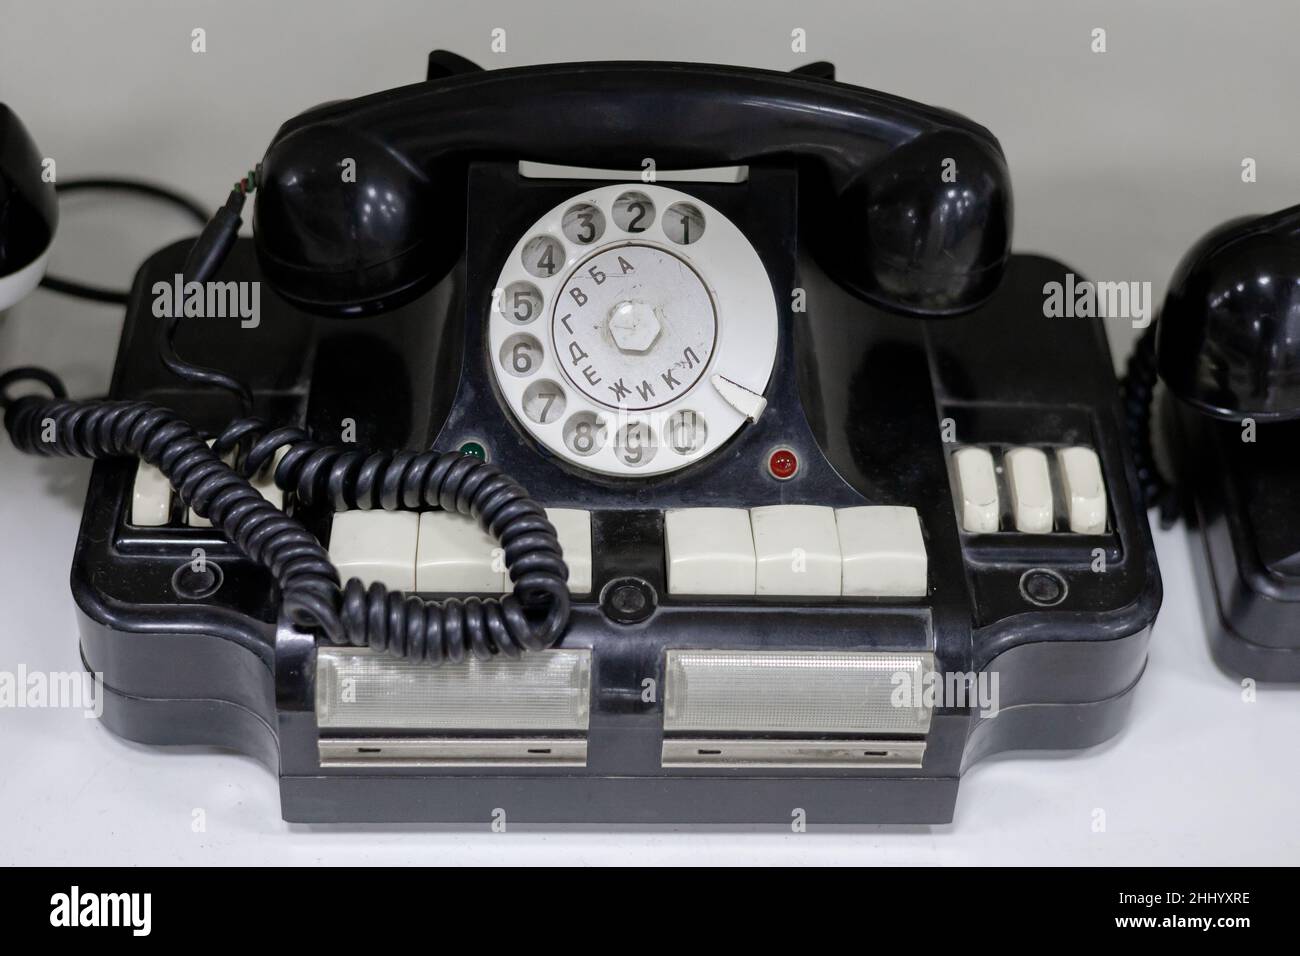 Ancien téléphone rotatif noir.Objet vintage de l'époque de l'URSS Banque D'Images